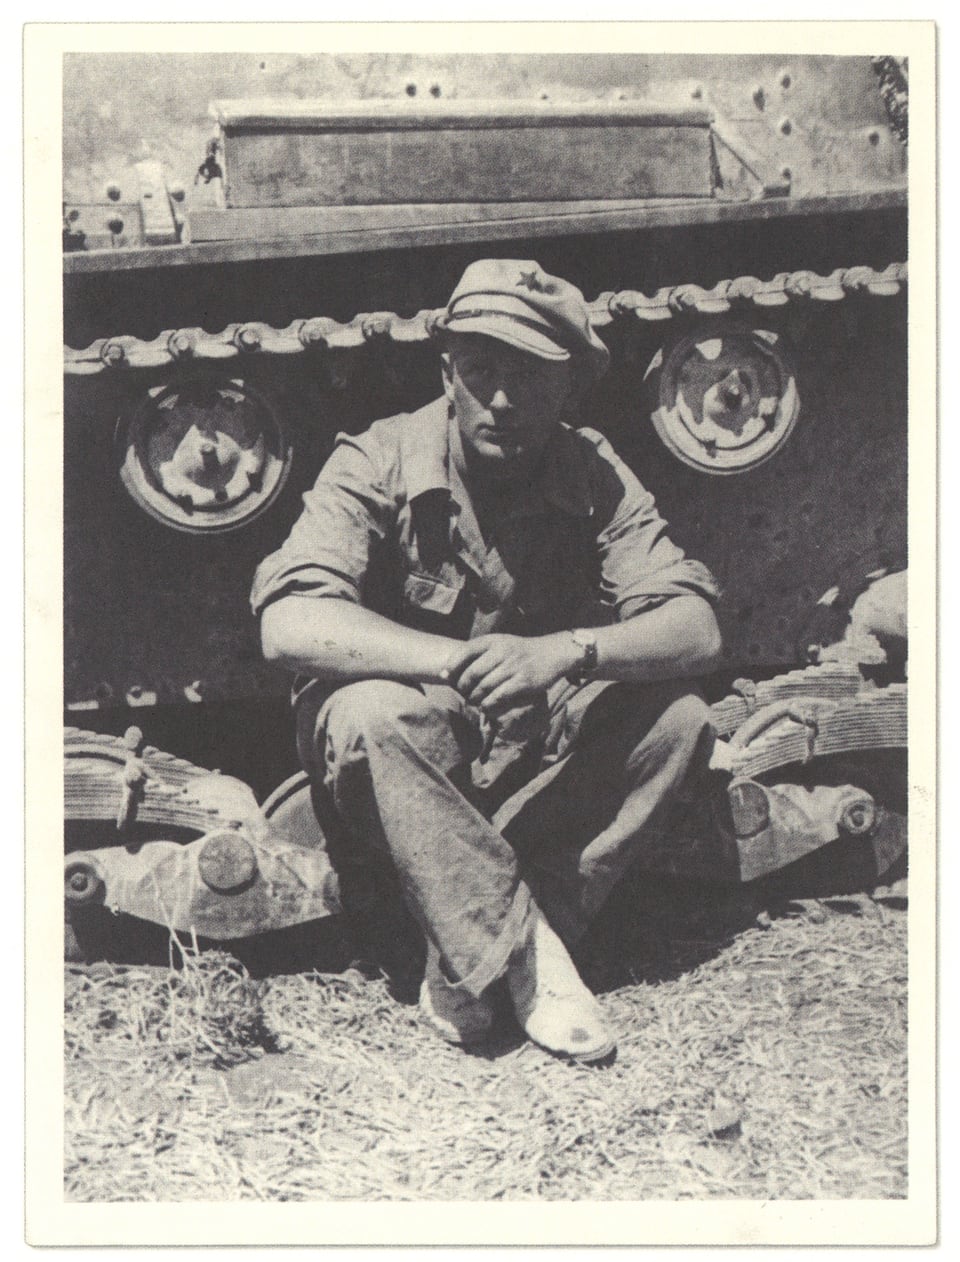 Alte Fotografie von einem Mann, der vor einem Panzer sitzt.